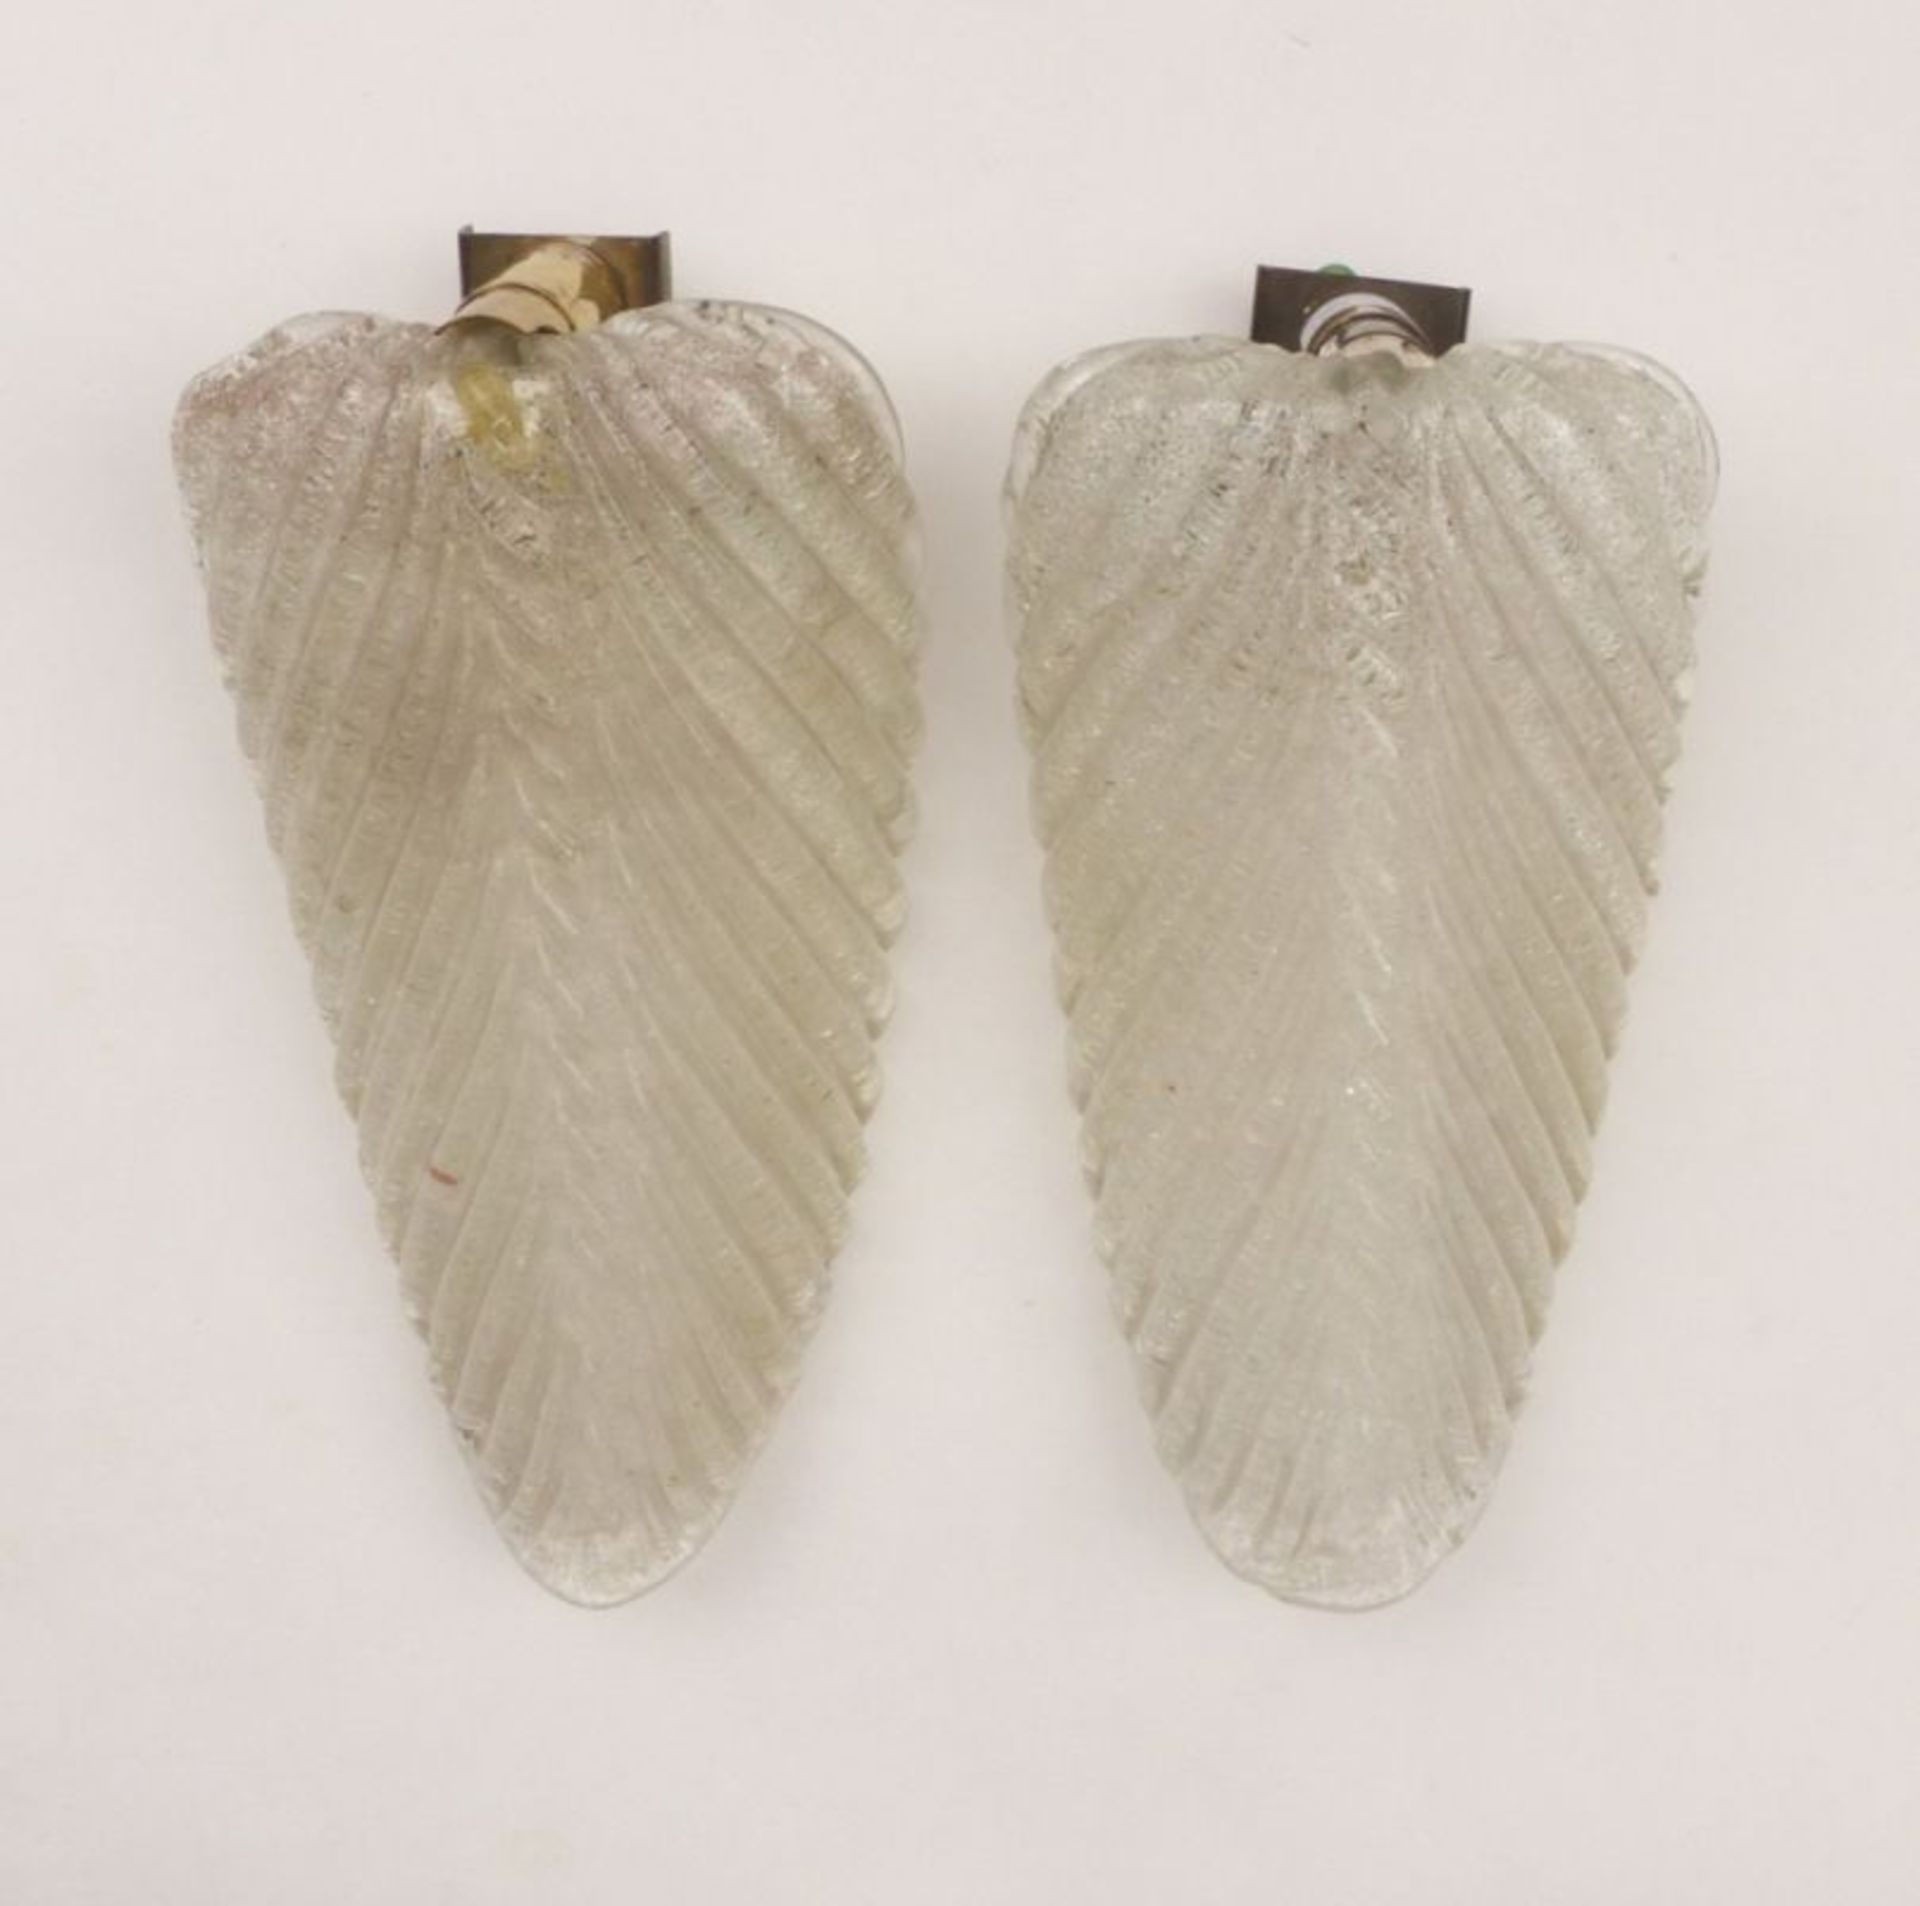 Paar Wandlampen in BlattformWohl Vetreria Seguso, Murano - 1950er JahreAußen mit gerippter